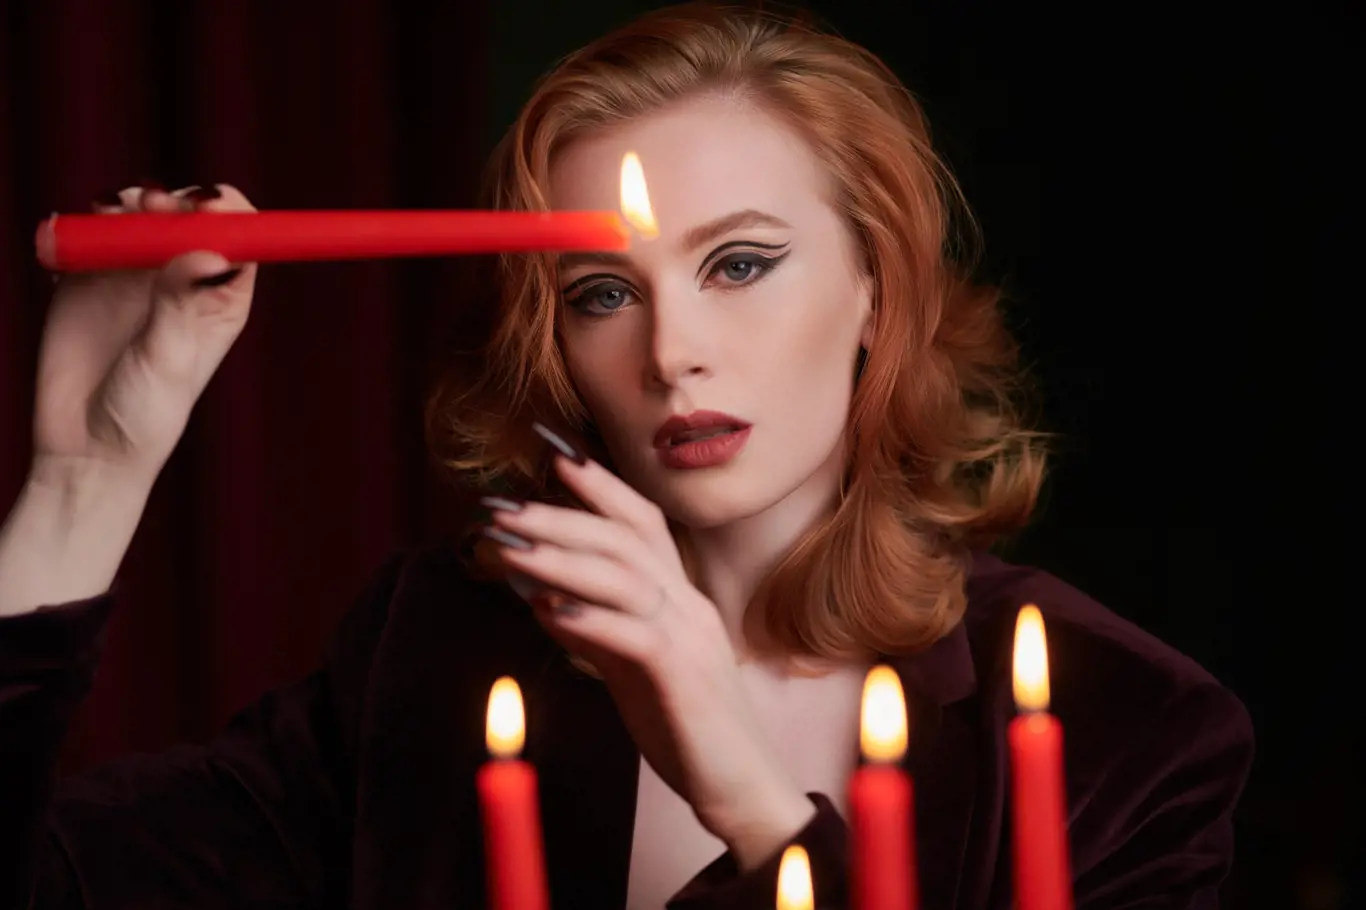 Žena s rudými vlasy drží zapálenou svíčku